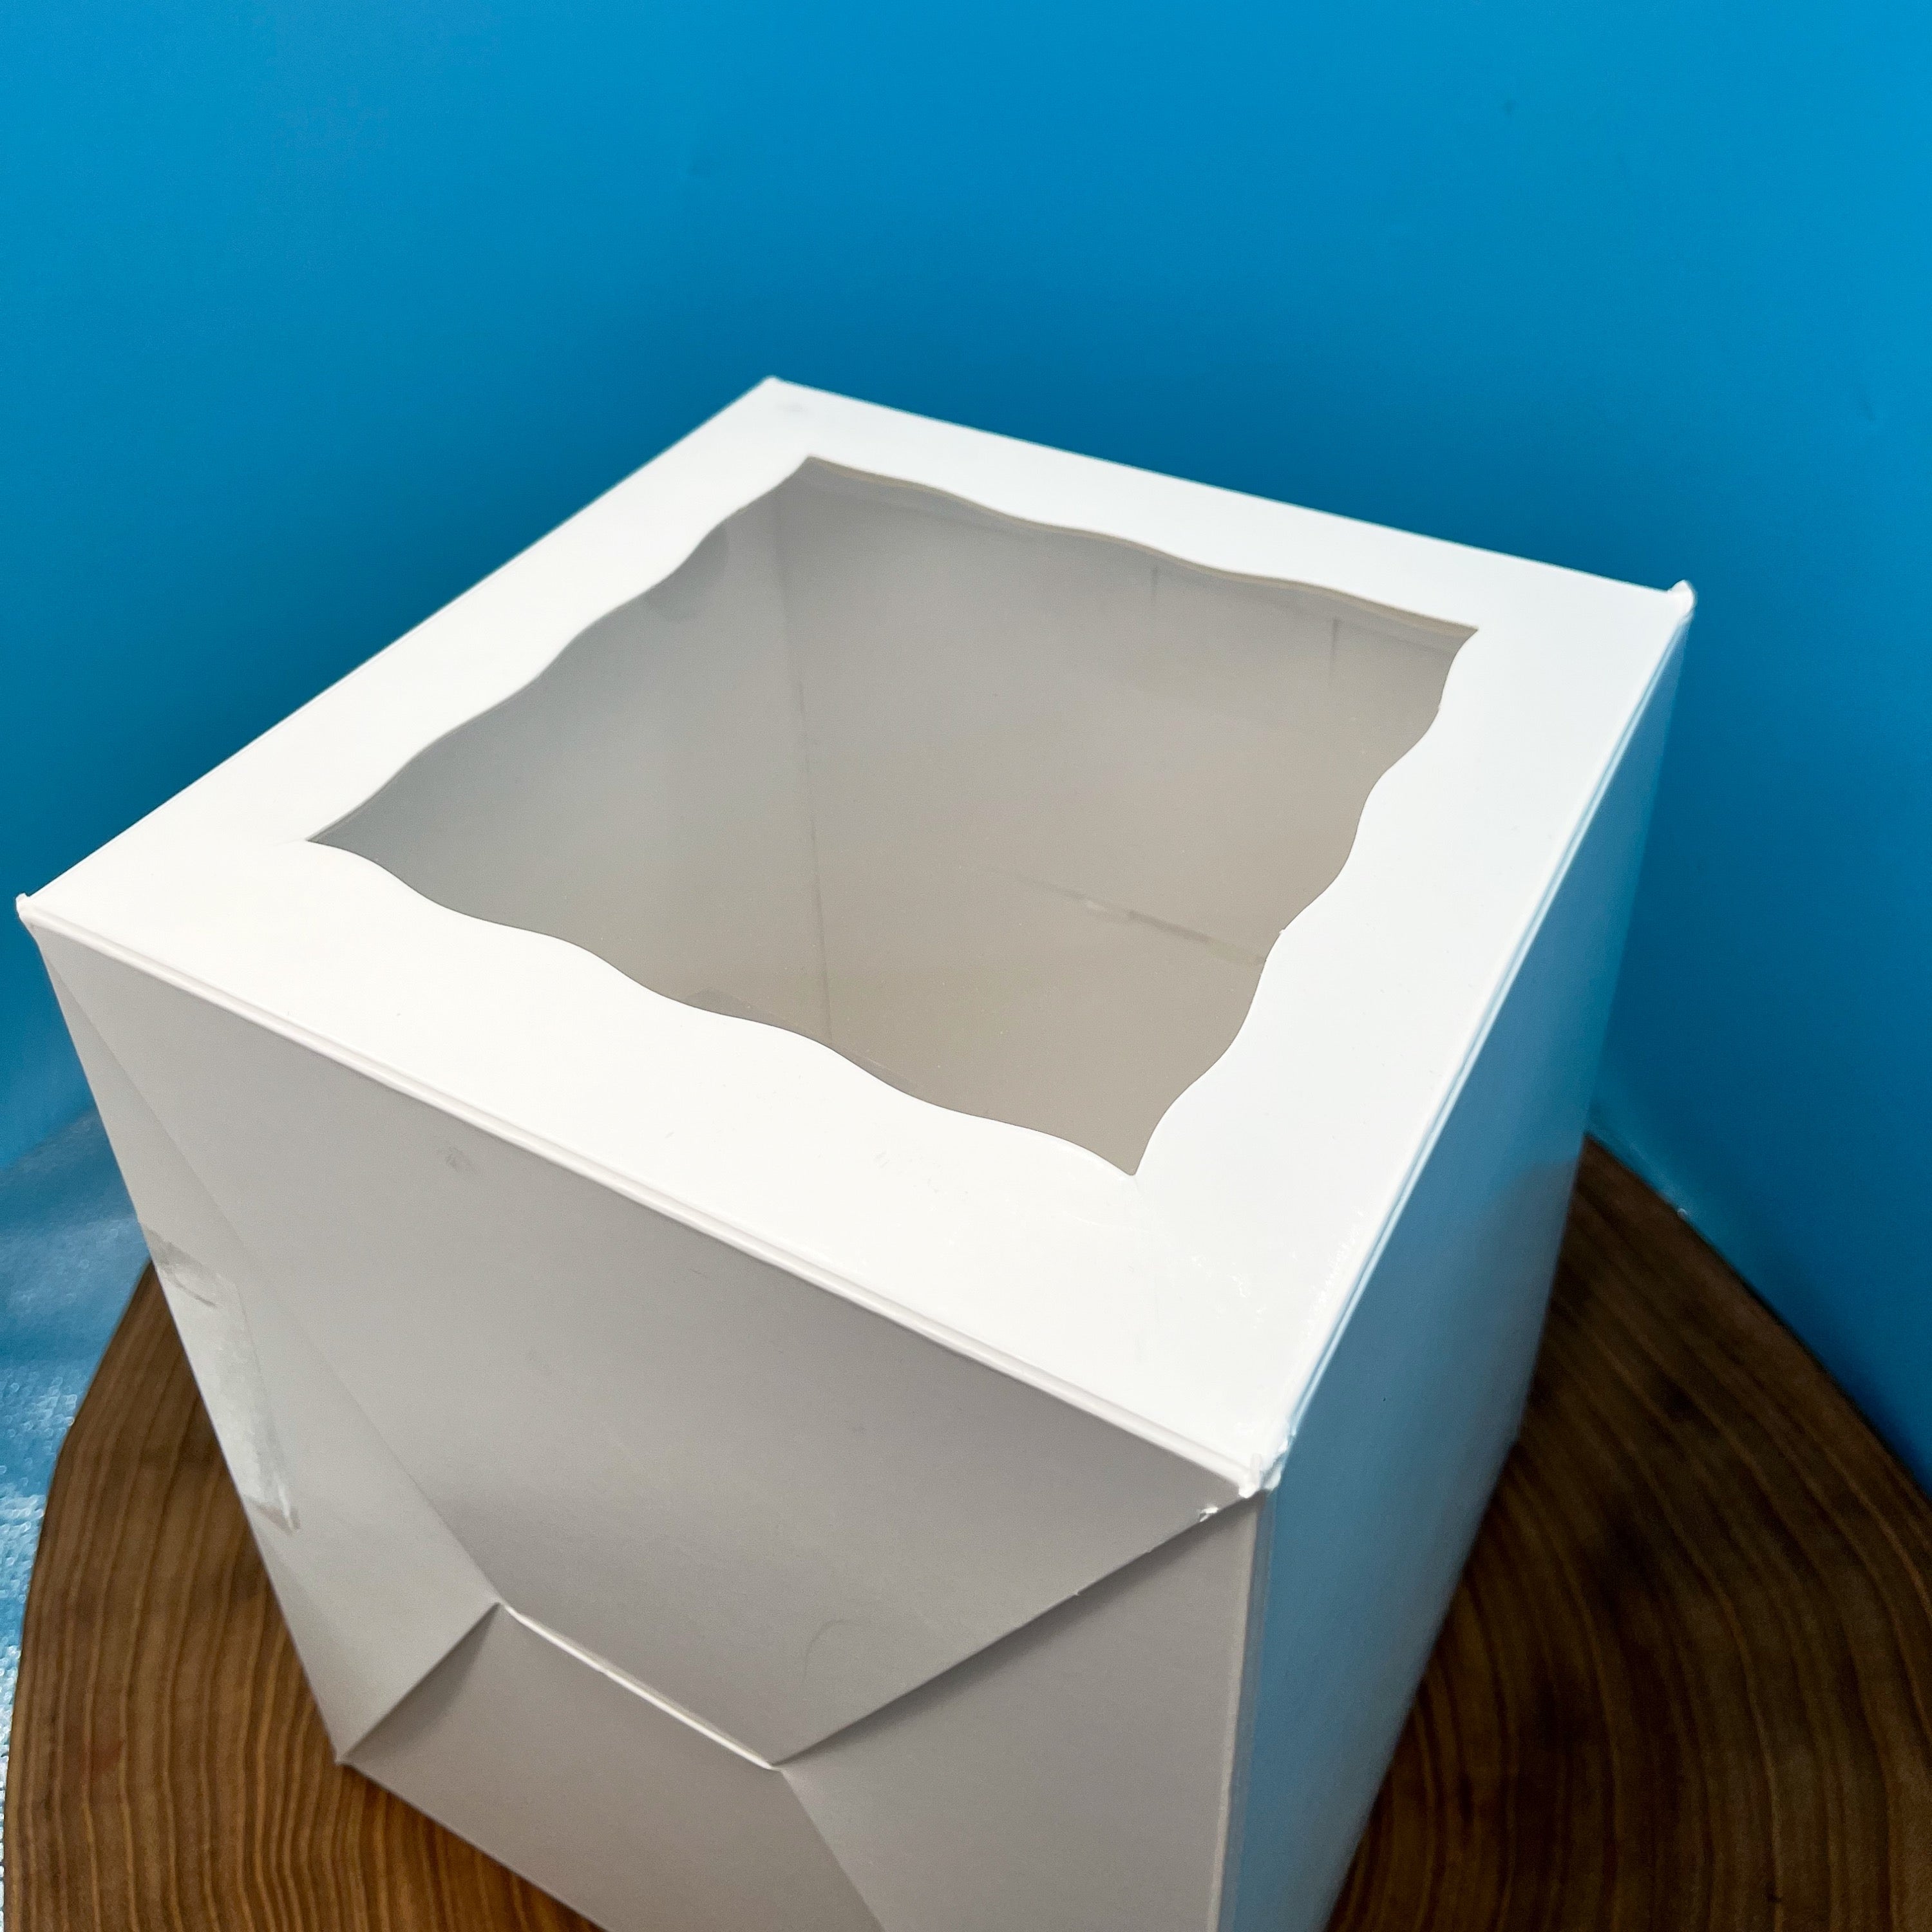 8 Inch Tall Cake Box with Window - 8x8x10 (One Piece)